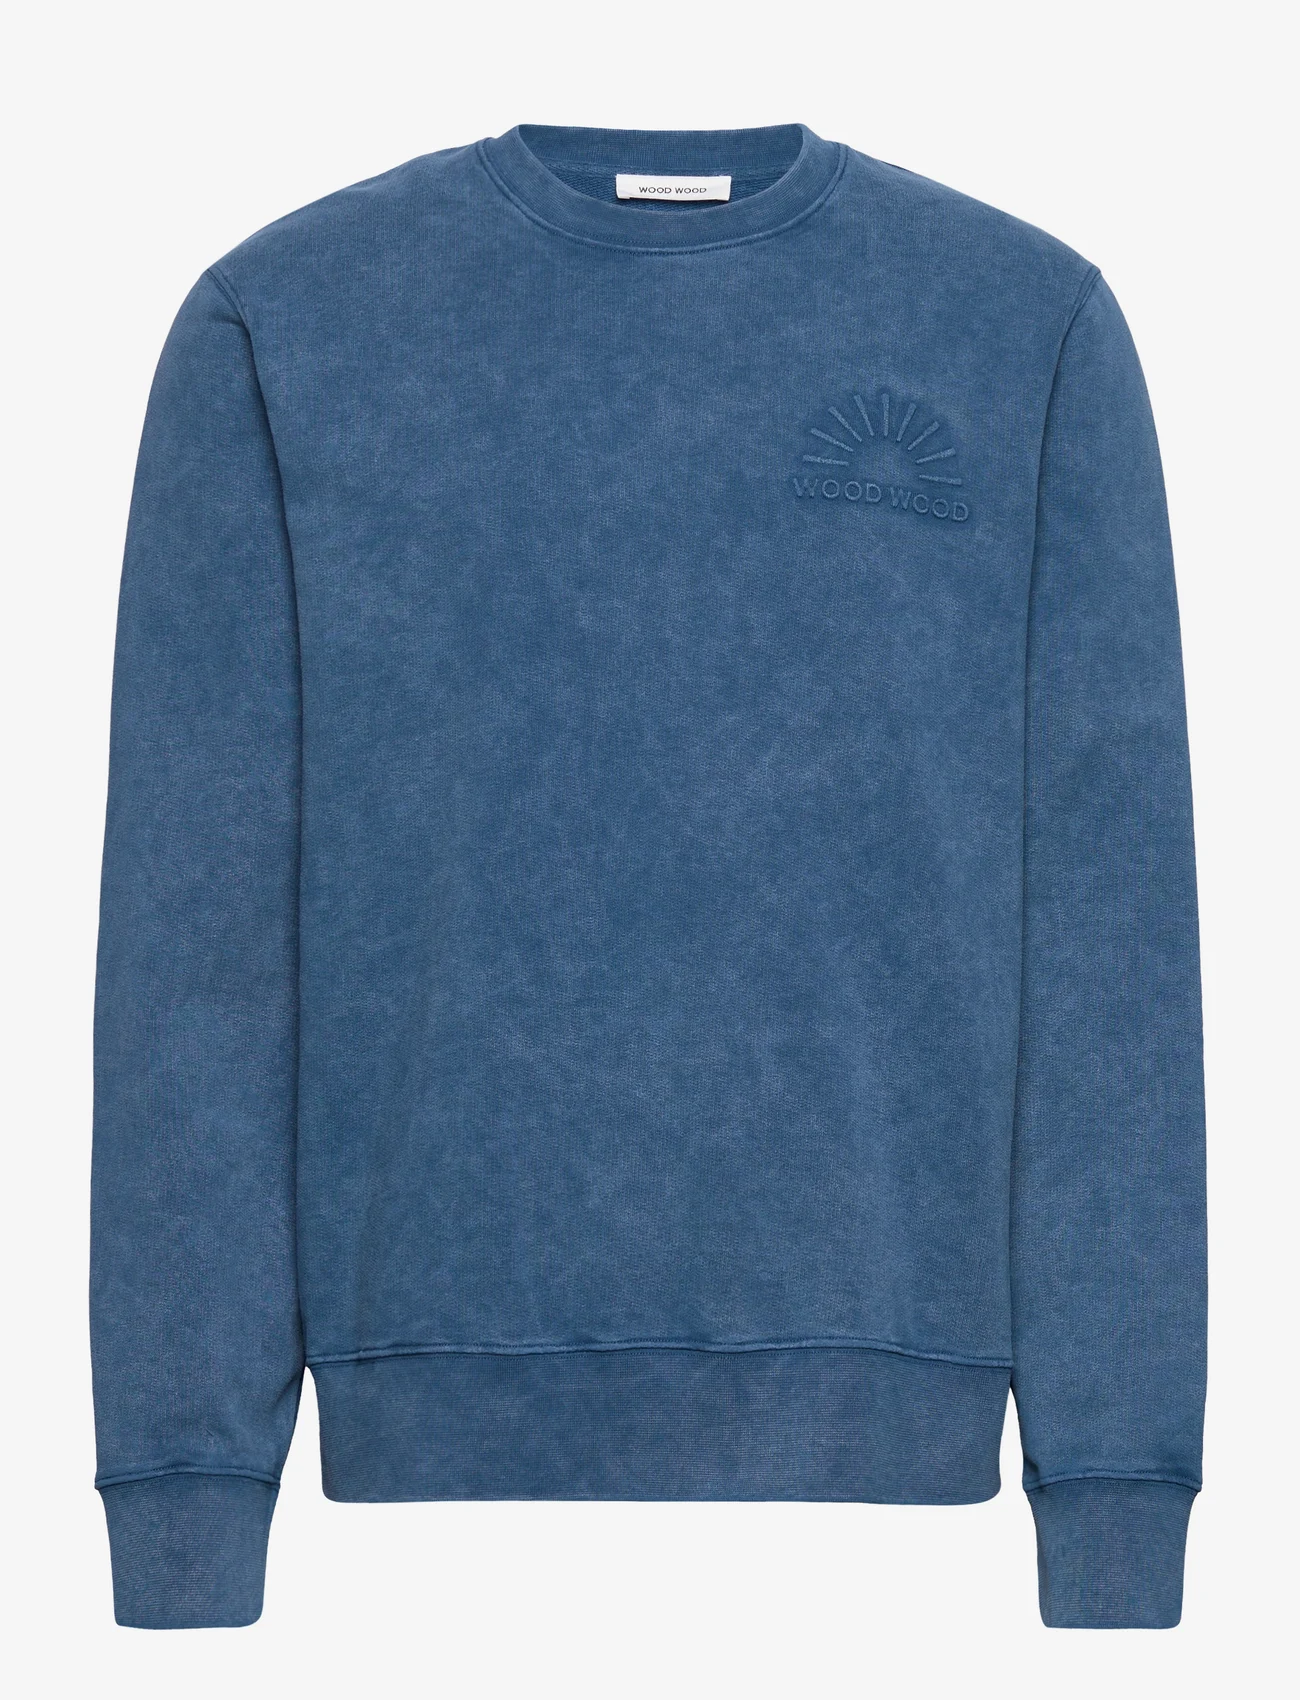 Wood Wood - Hugh embossed sweatshirt - huvtröjor - dark blue - 0